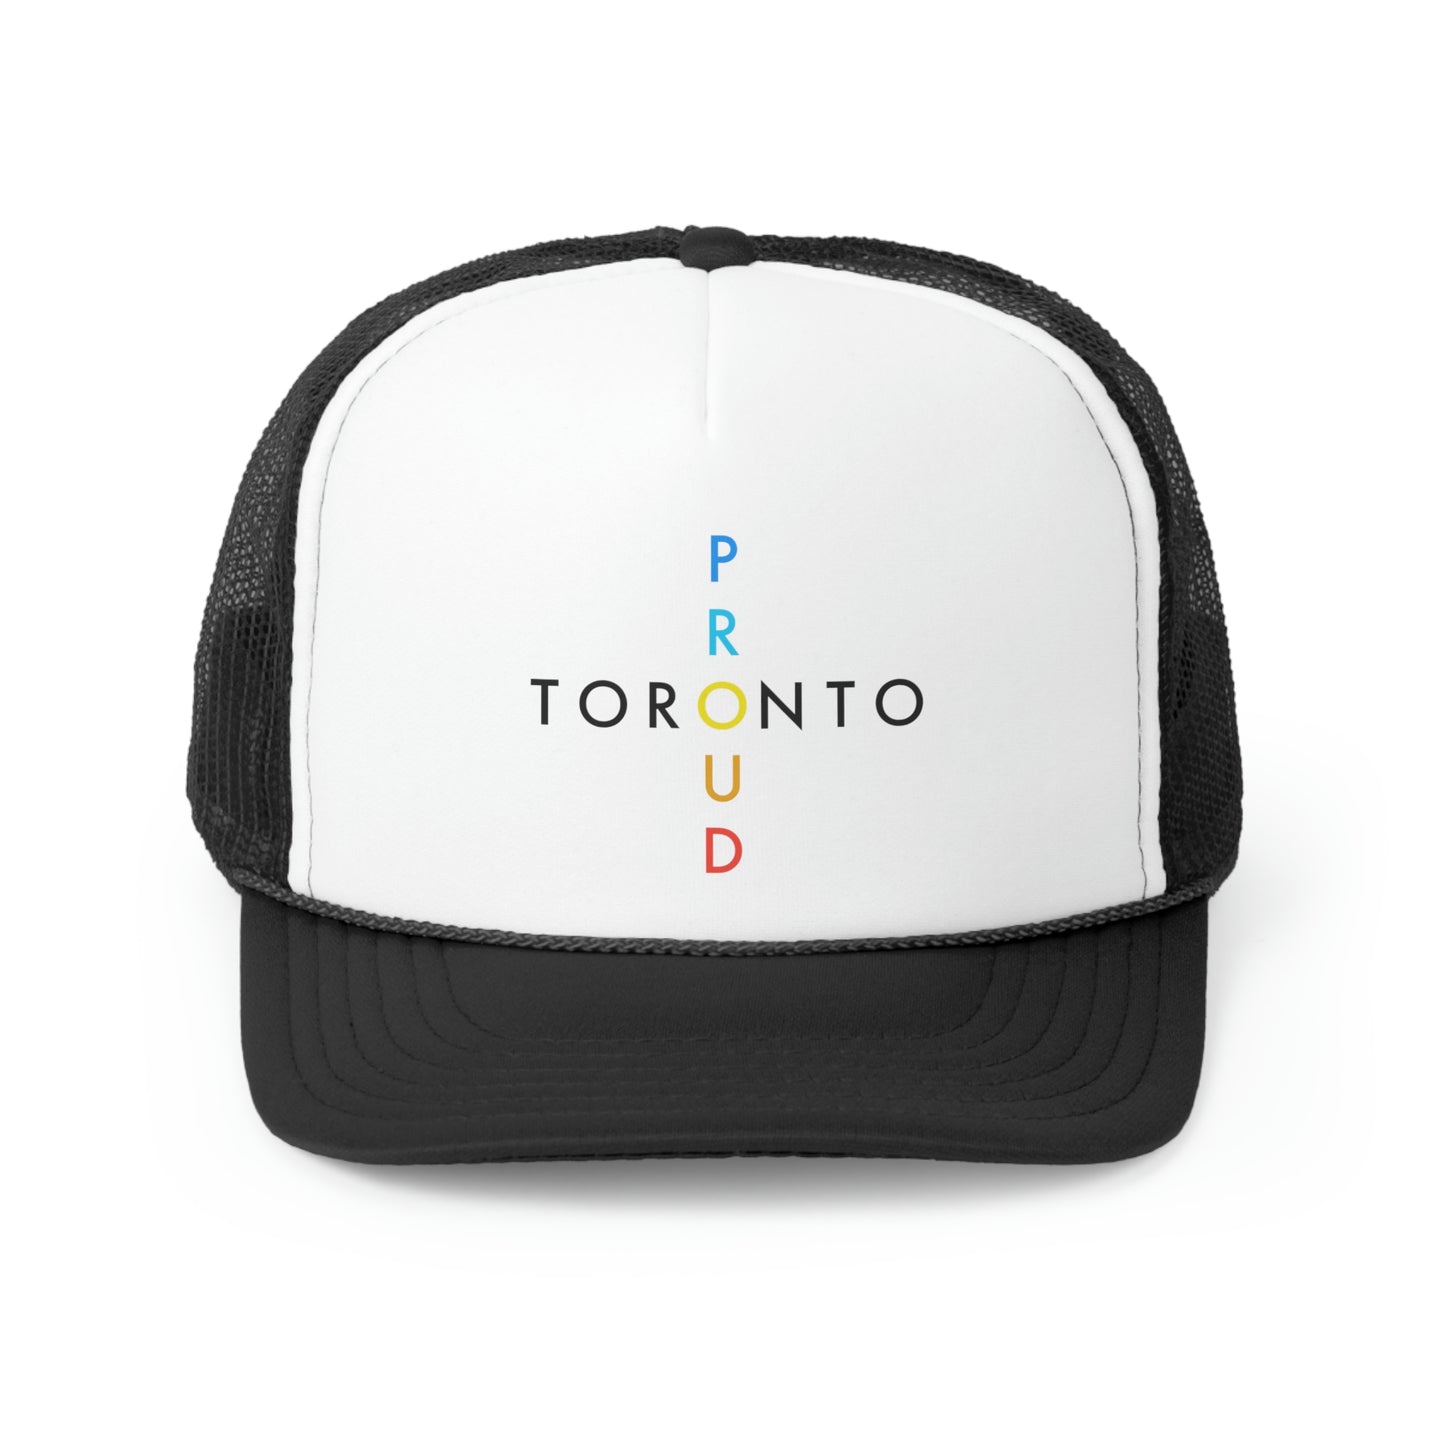 Toronto Proud Trucker Cap